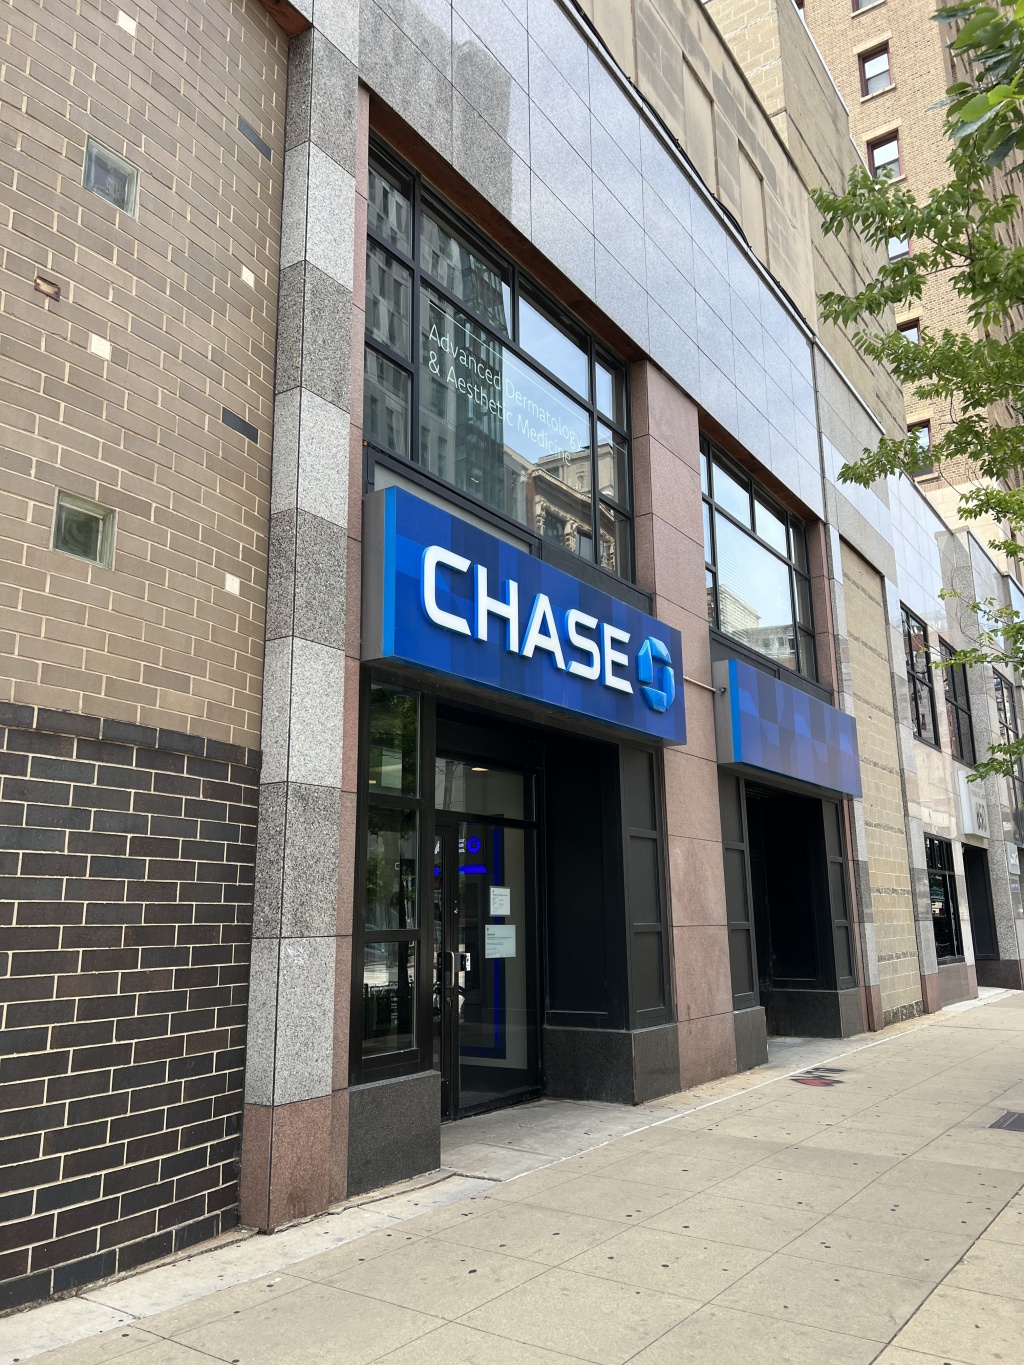 Chase Bank at 850 S Wabash is closing.